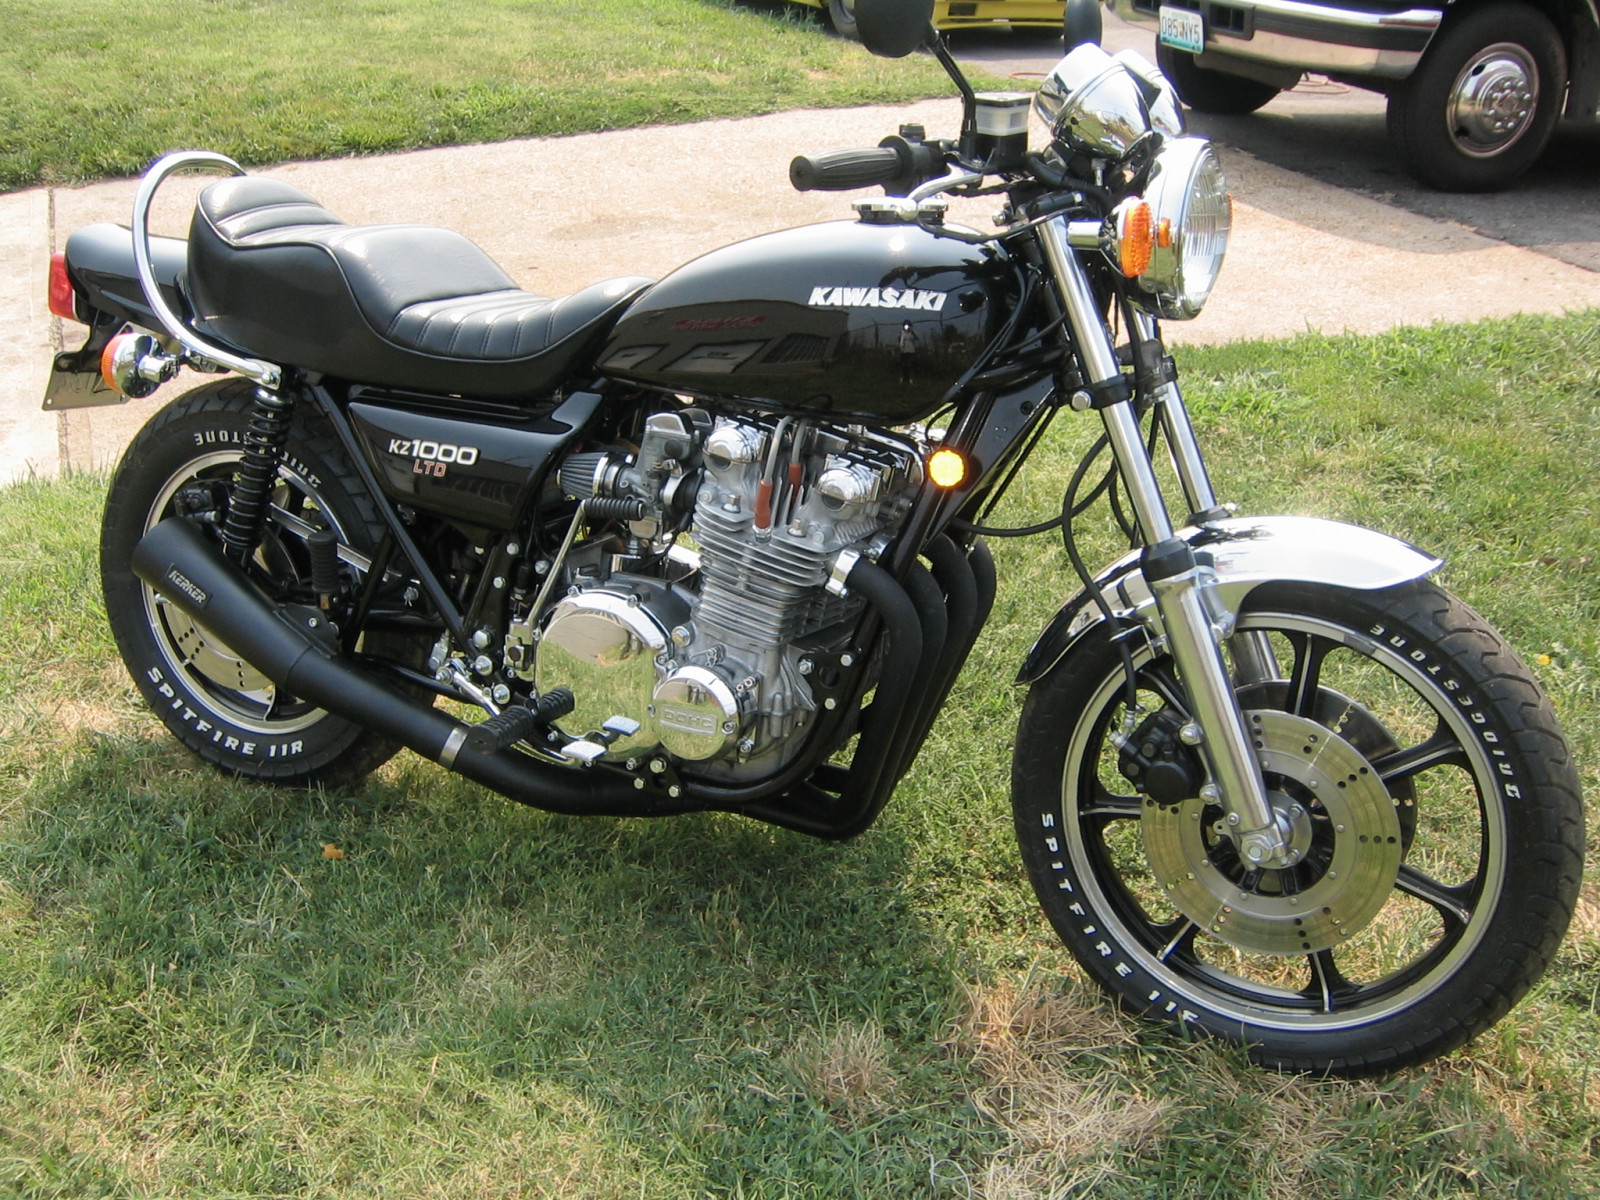 Tdm 900 | Yamaha, Bike trips, Motorcycle